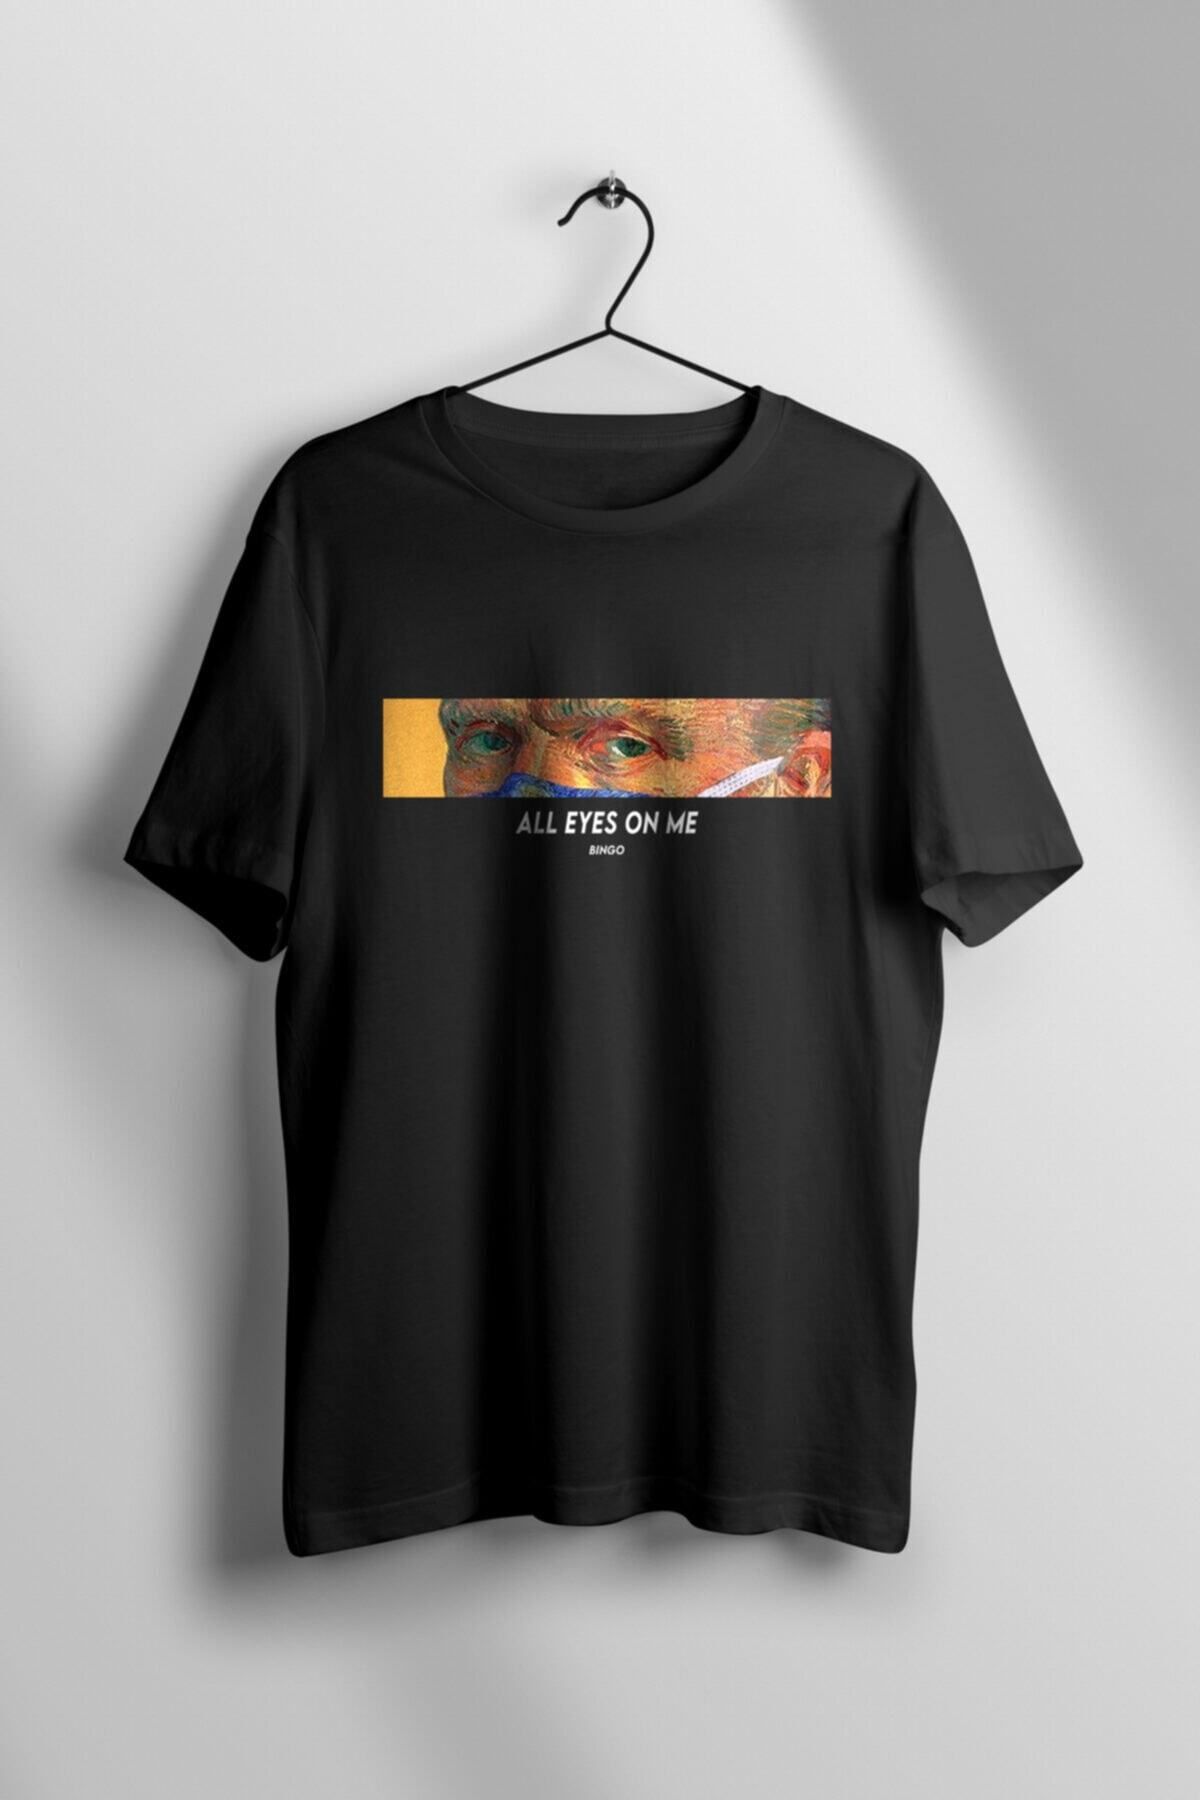 Orbans Unisex Van Gogh T-shirt